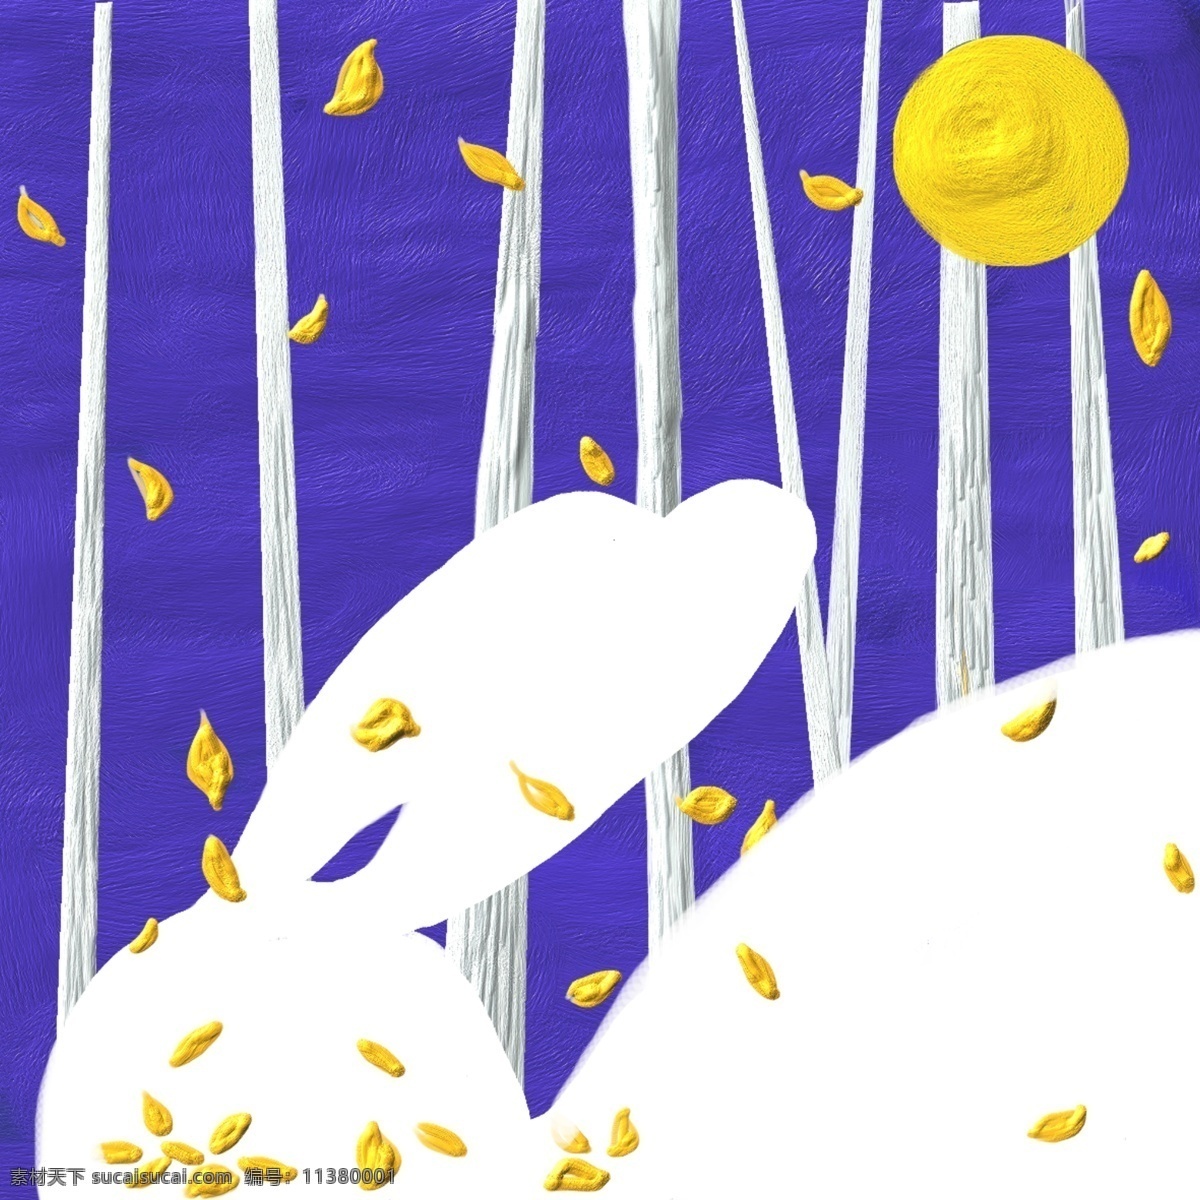 秋日插画设计 秋 中秋 月亮 插画 手绘 原创 兔子 秋季背景插画 秋天